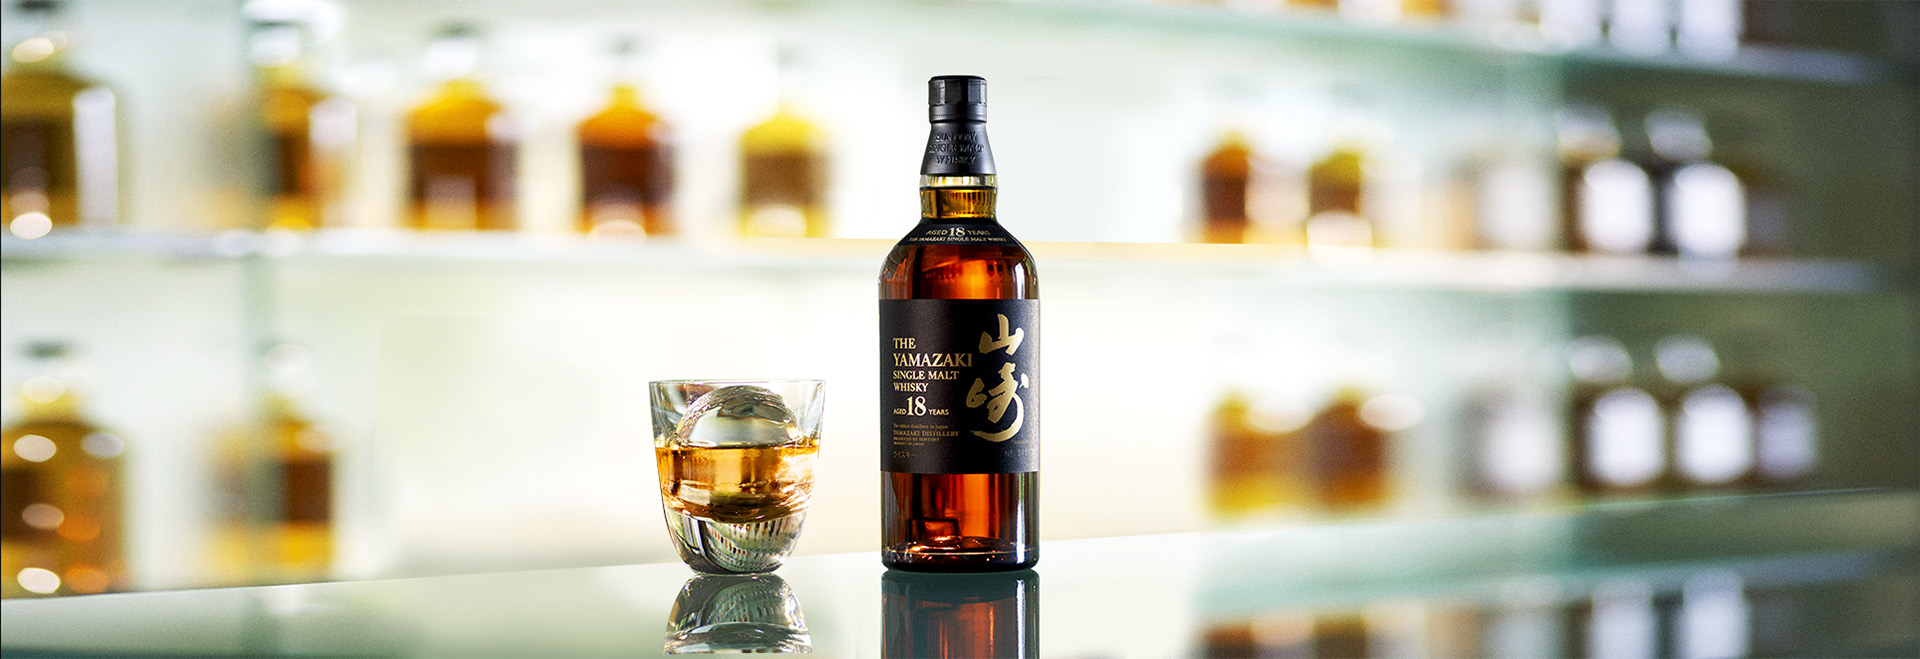 限量) 山崎18年日本威士忌700ml - 酒酒酒全台最大的酒品詢價網